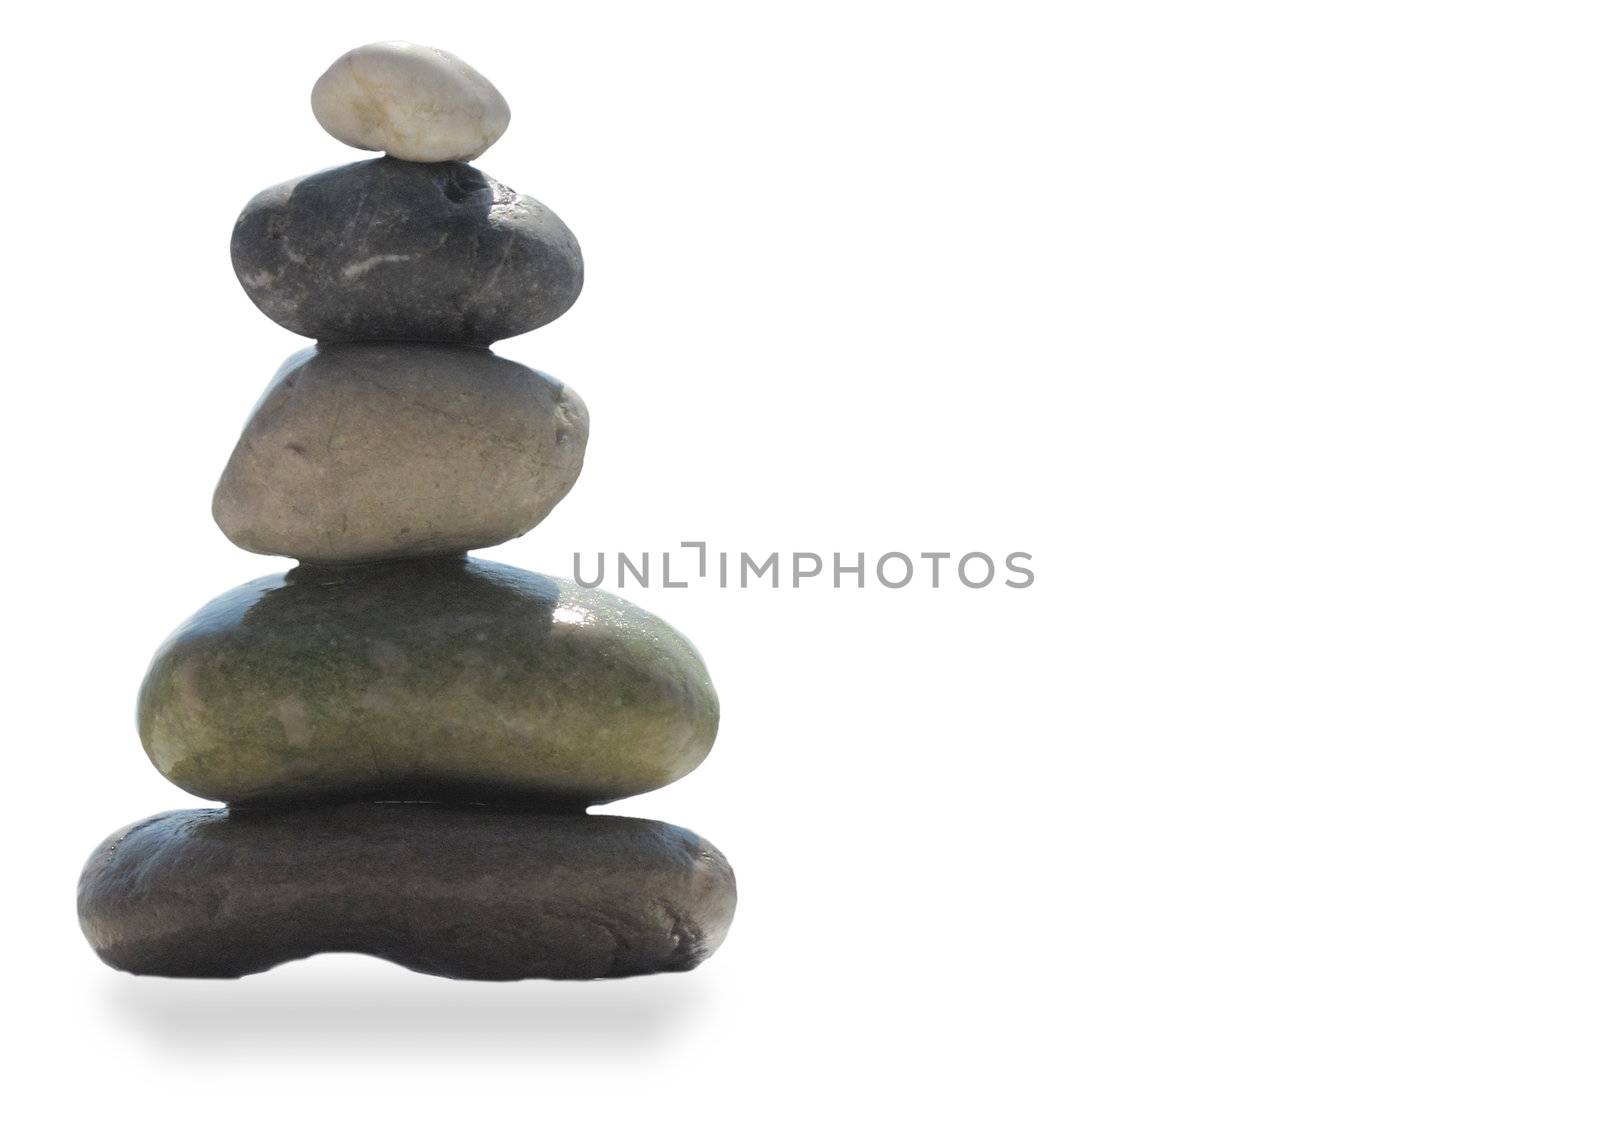 The stack of pebble stones in zen concept 